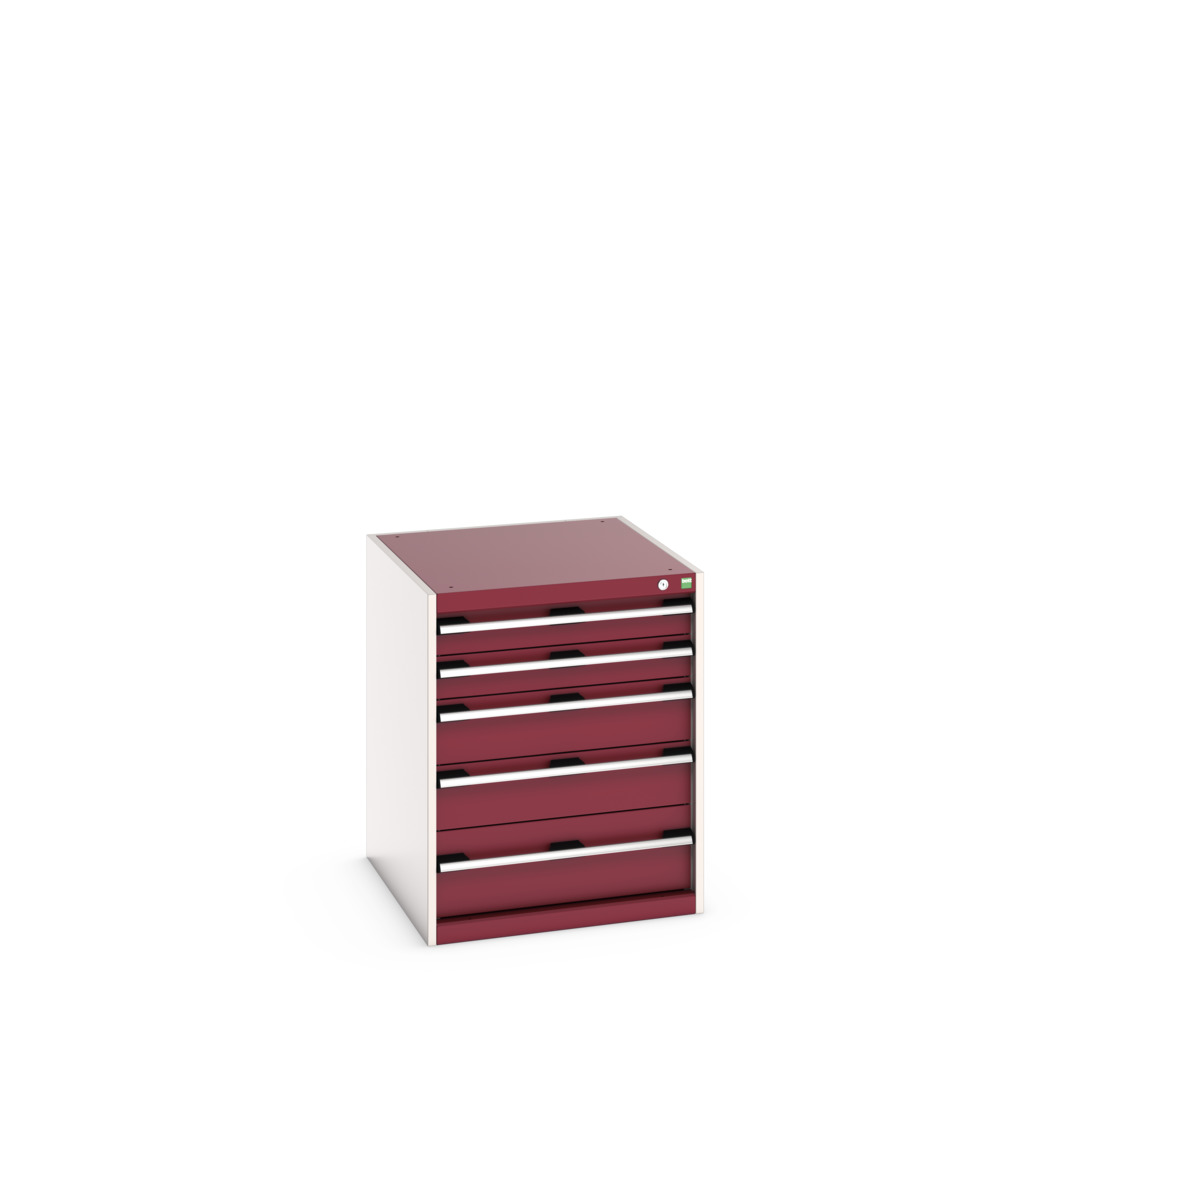 40027015.24V - cubio drawer cabinet